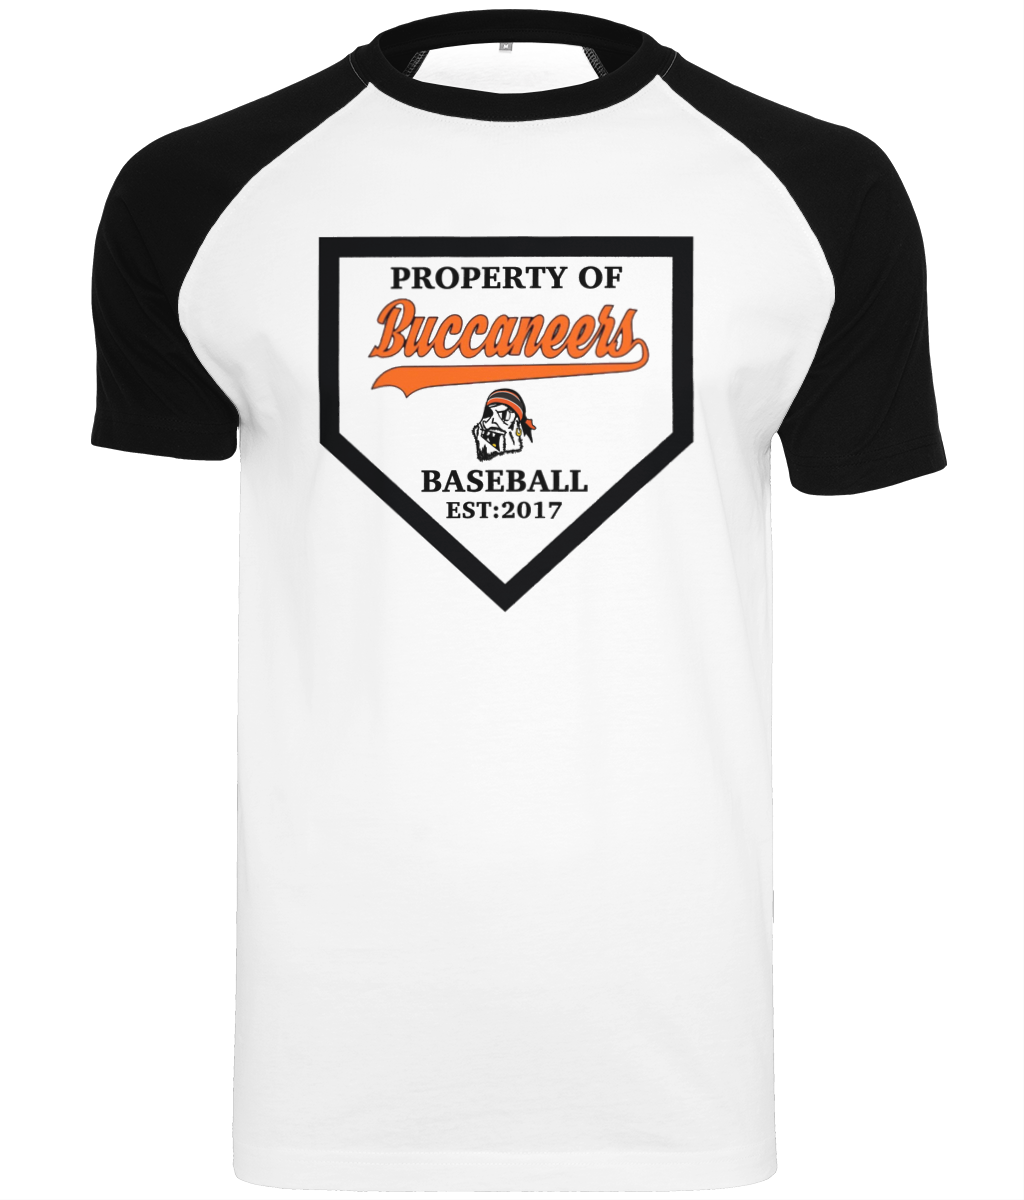 Property of Buccaneers T-shirt